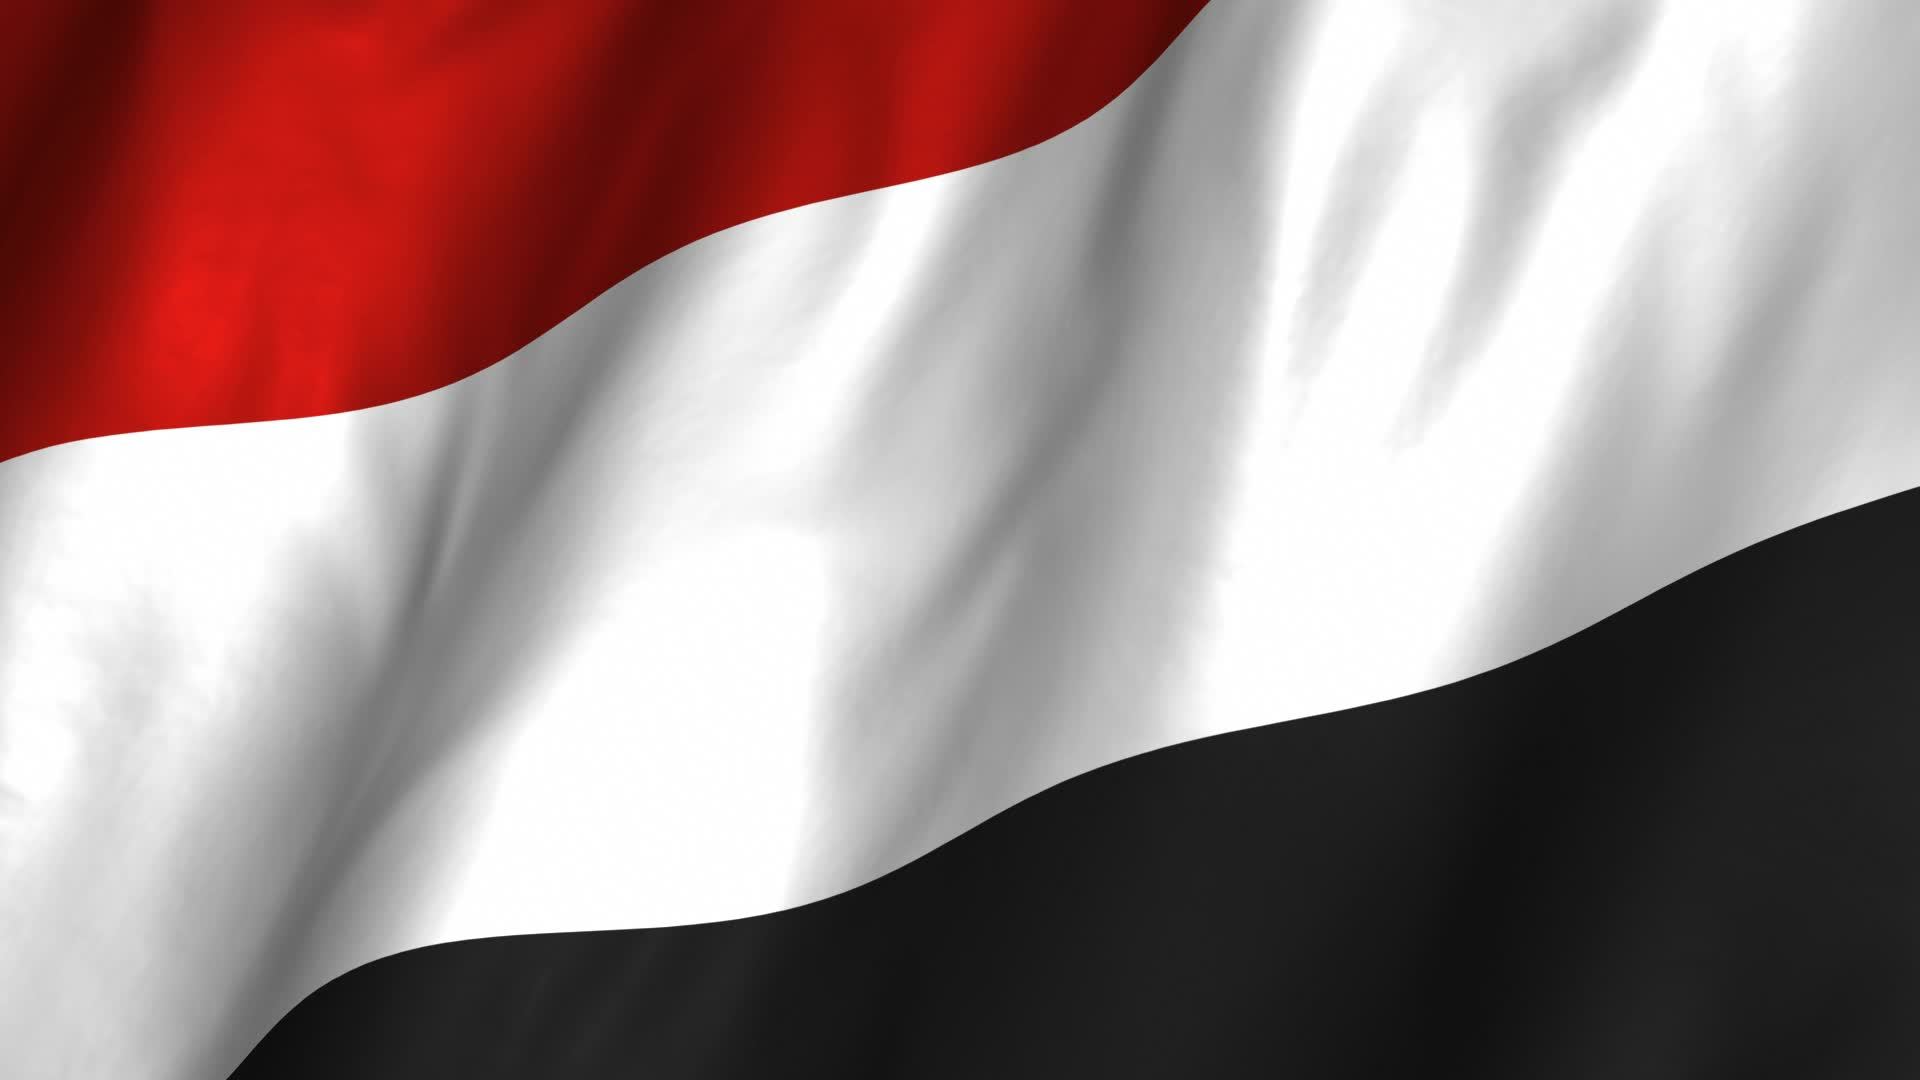 اجماع عام من كل ممثلي السلطات المحلية بالمحافظات اليمنية على دعم ومساندة الشرعية ورفض الانقلاب في عدن (تقرير)